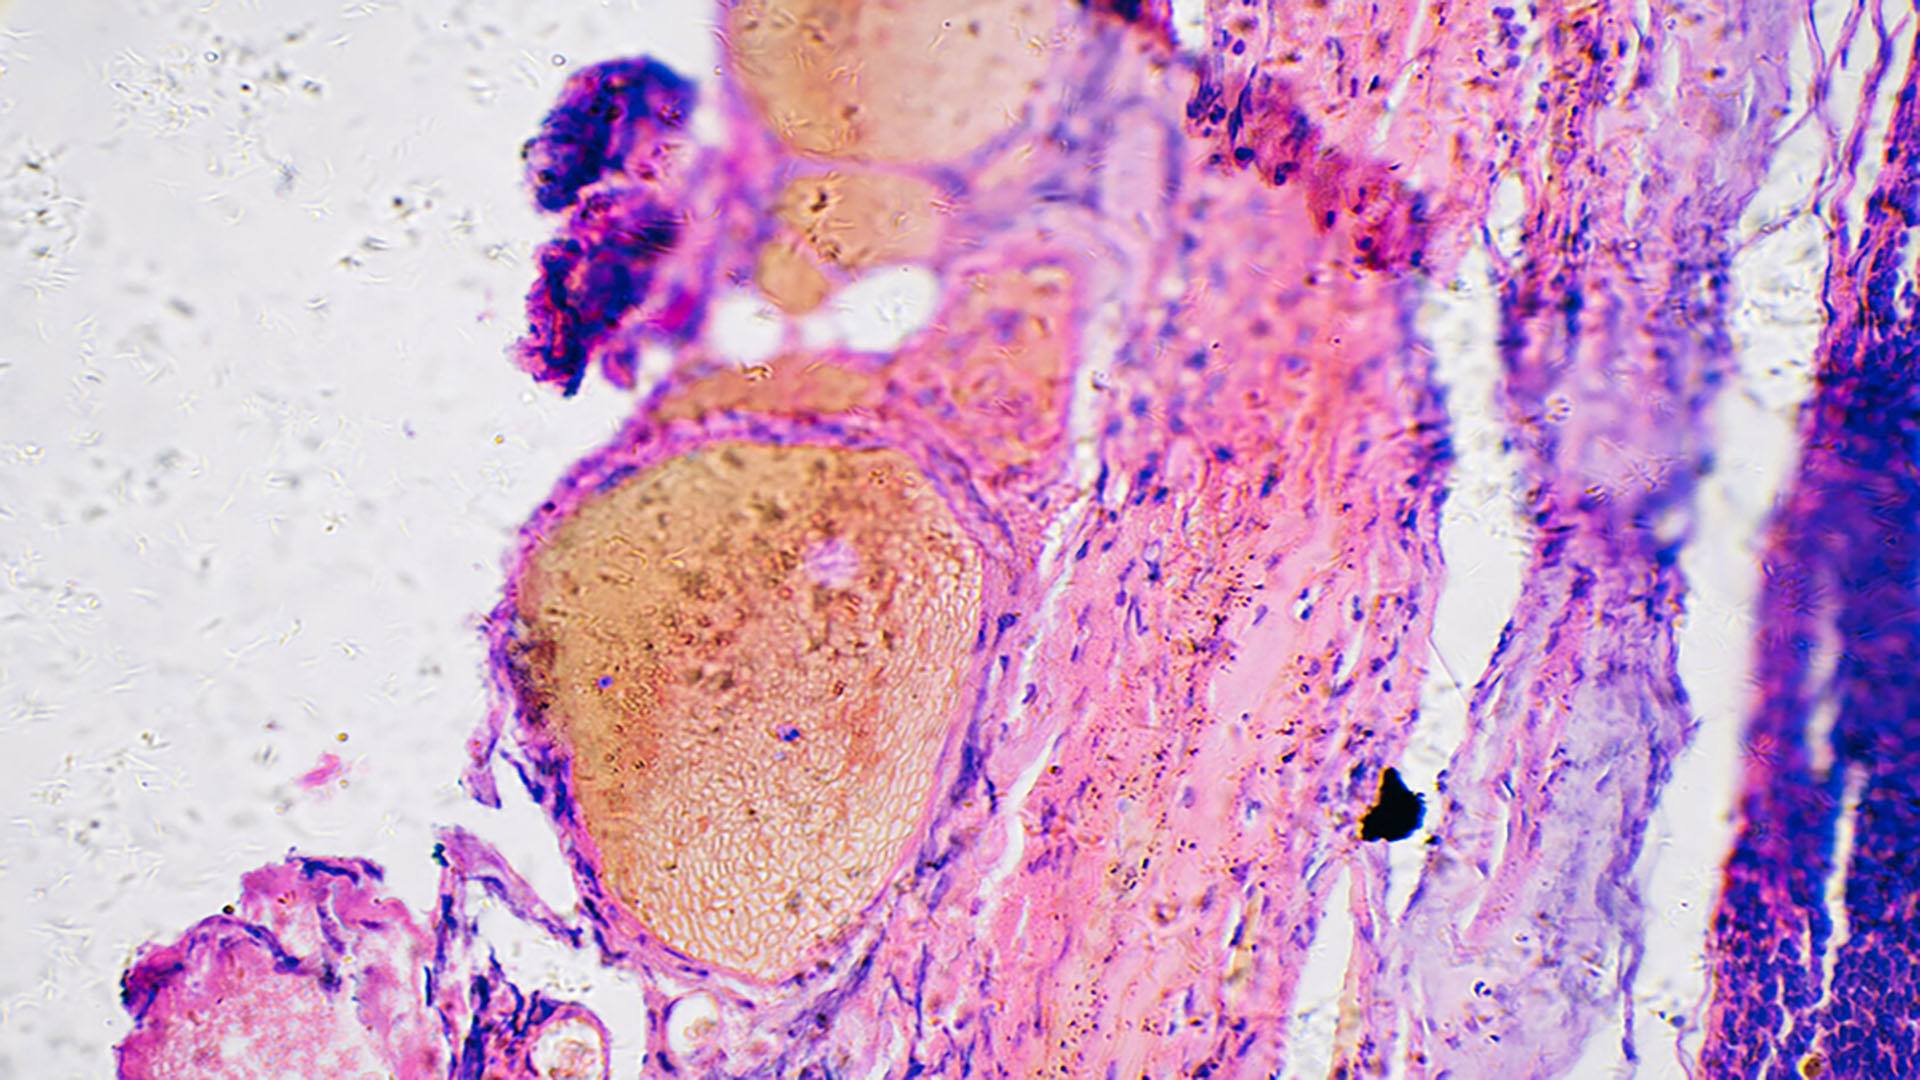 بیوپسی سلول های سرطانی ملانوما در زیر میکروسکوپ.  سلول ها برای کنتراست بیشتر رنگ می شوند.